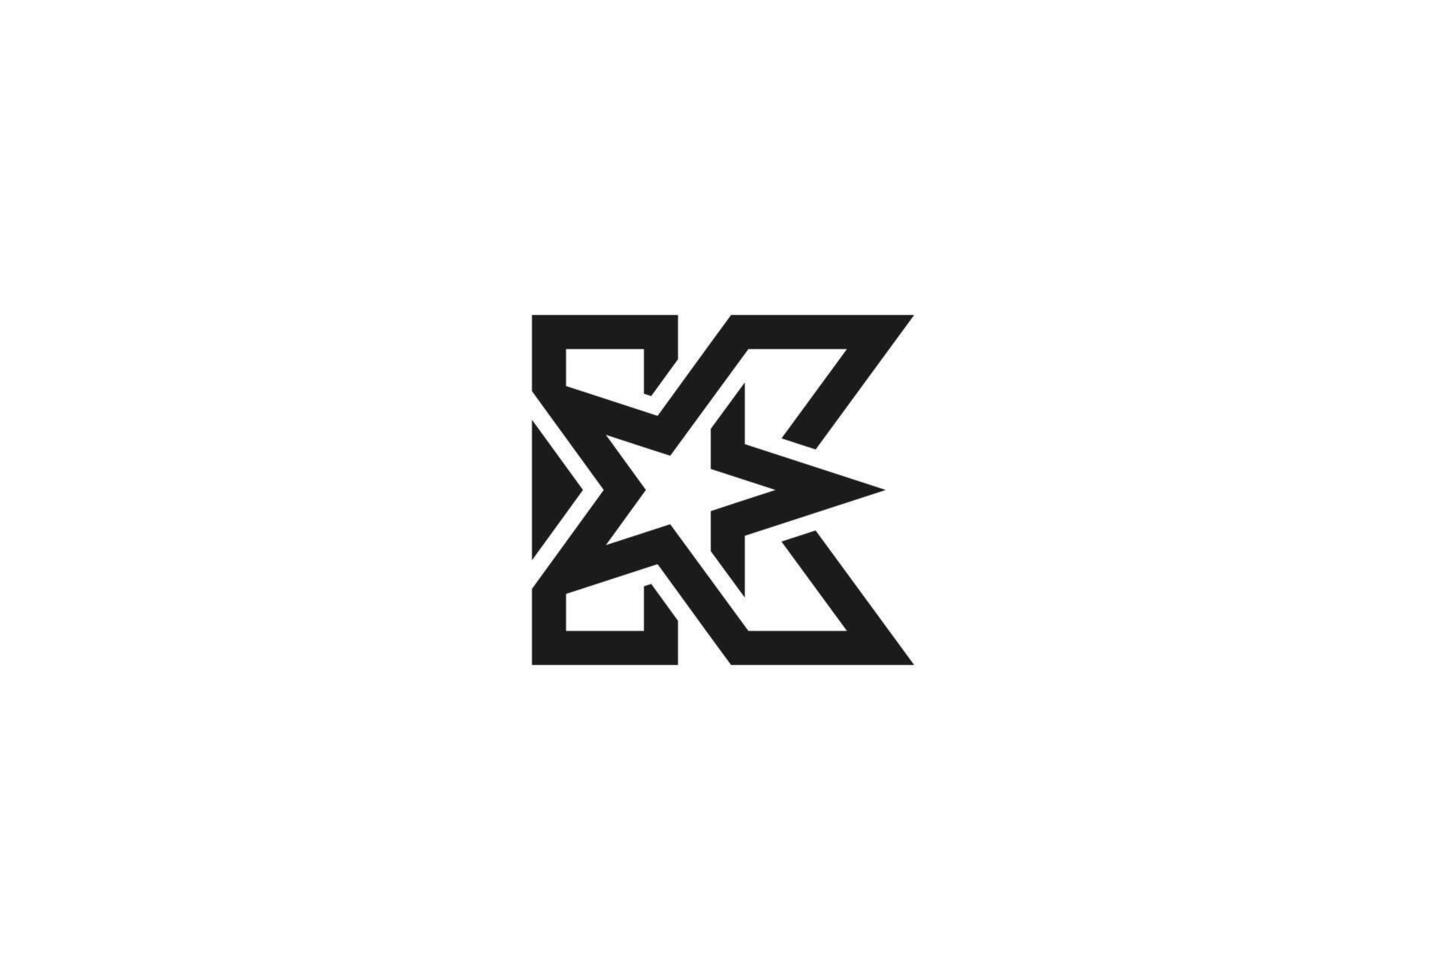 lettre k étoile logo , lettre k avec étoile combinaison , illustration vecteur